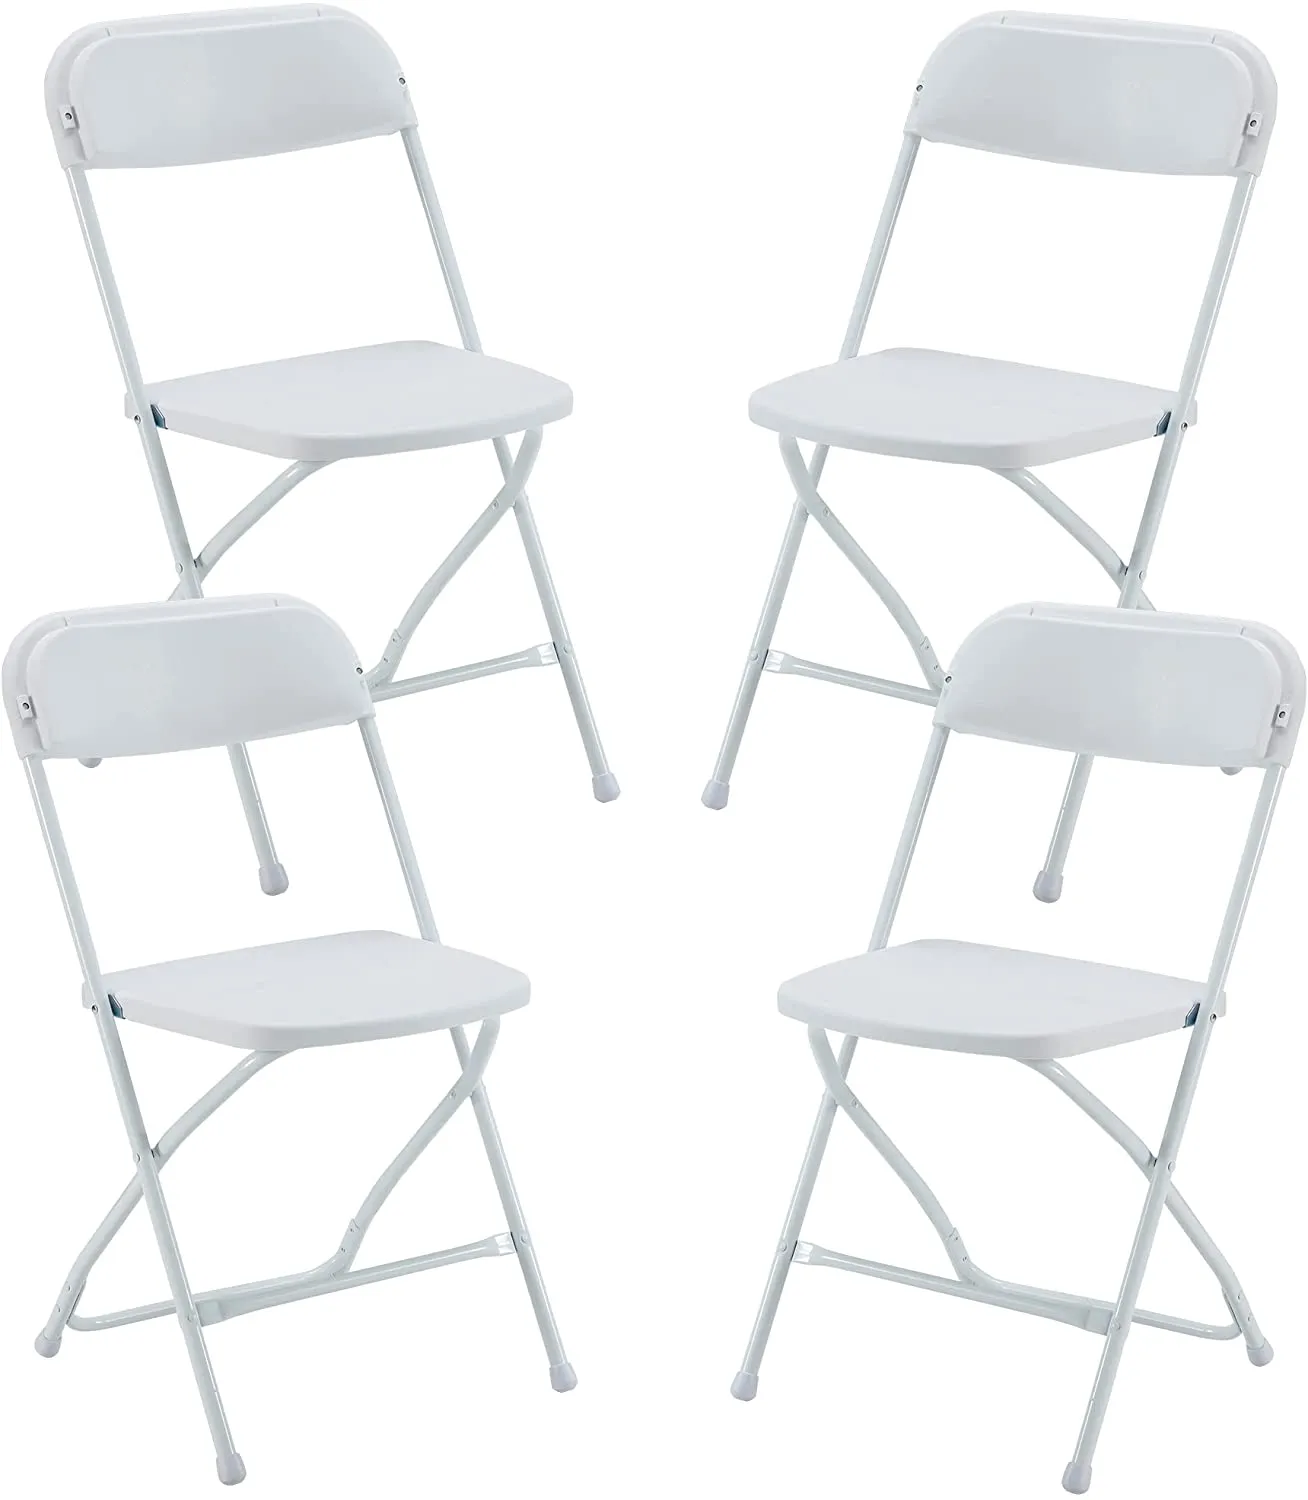 US Stock 4-Pack vouwplastic stoelen draagbare stoel met metalen frame trouwfeest commerciële stoelen wit strand tuinpark benodigdheden sxjun7